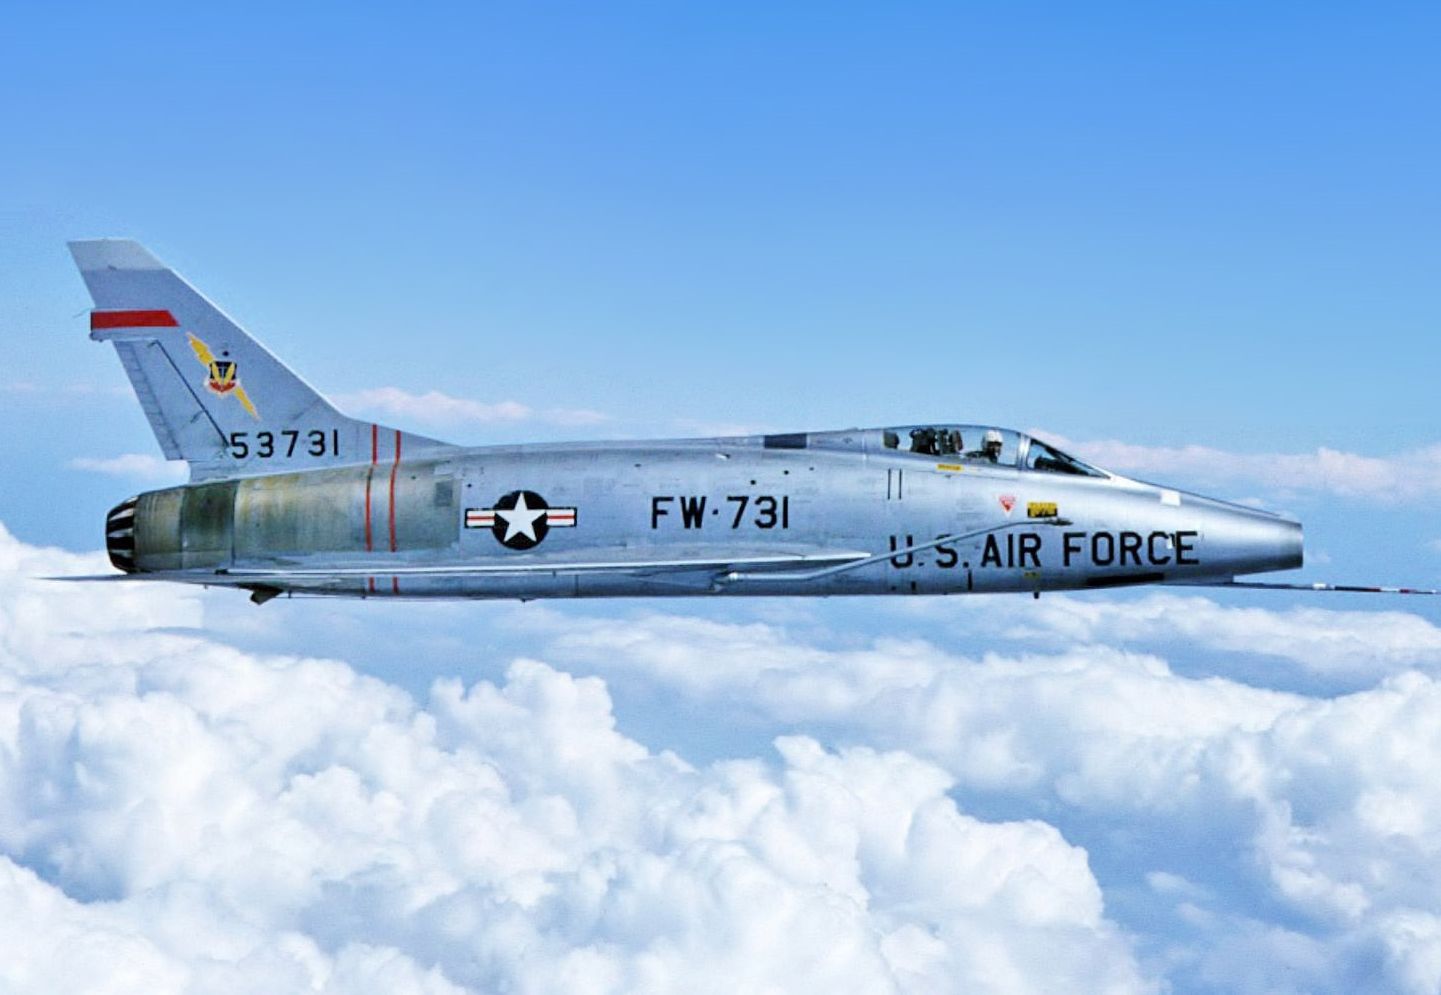 F-100 in the sky